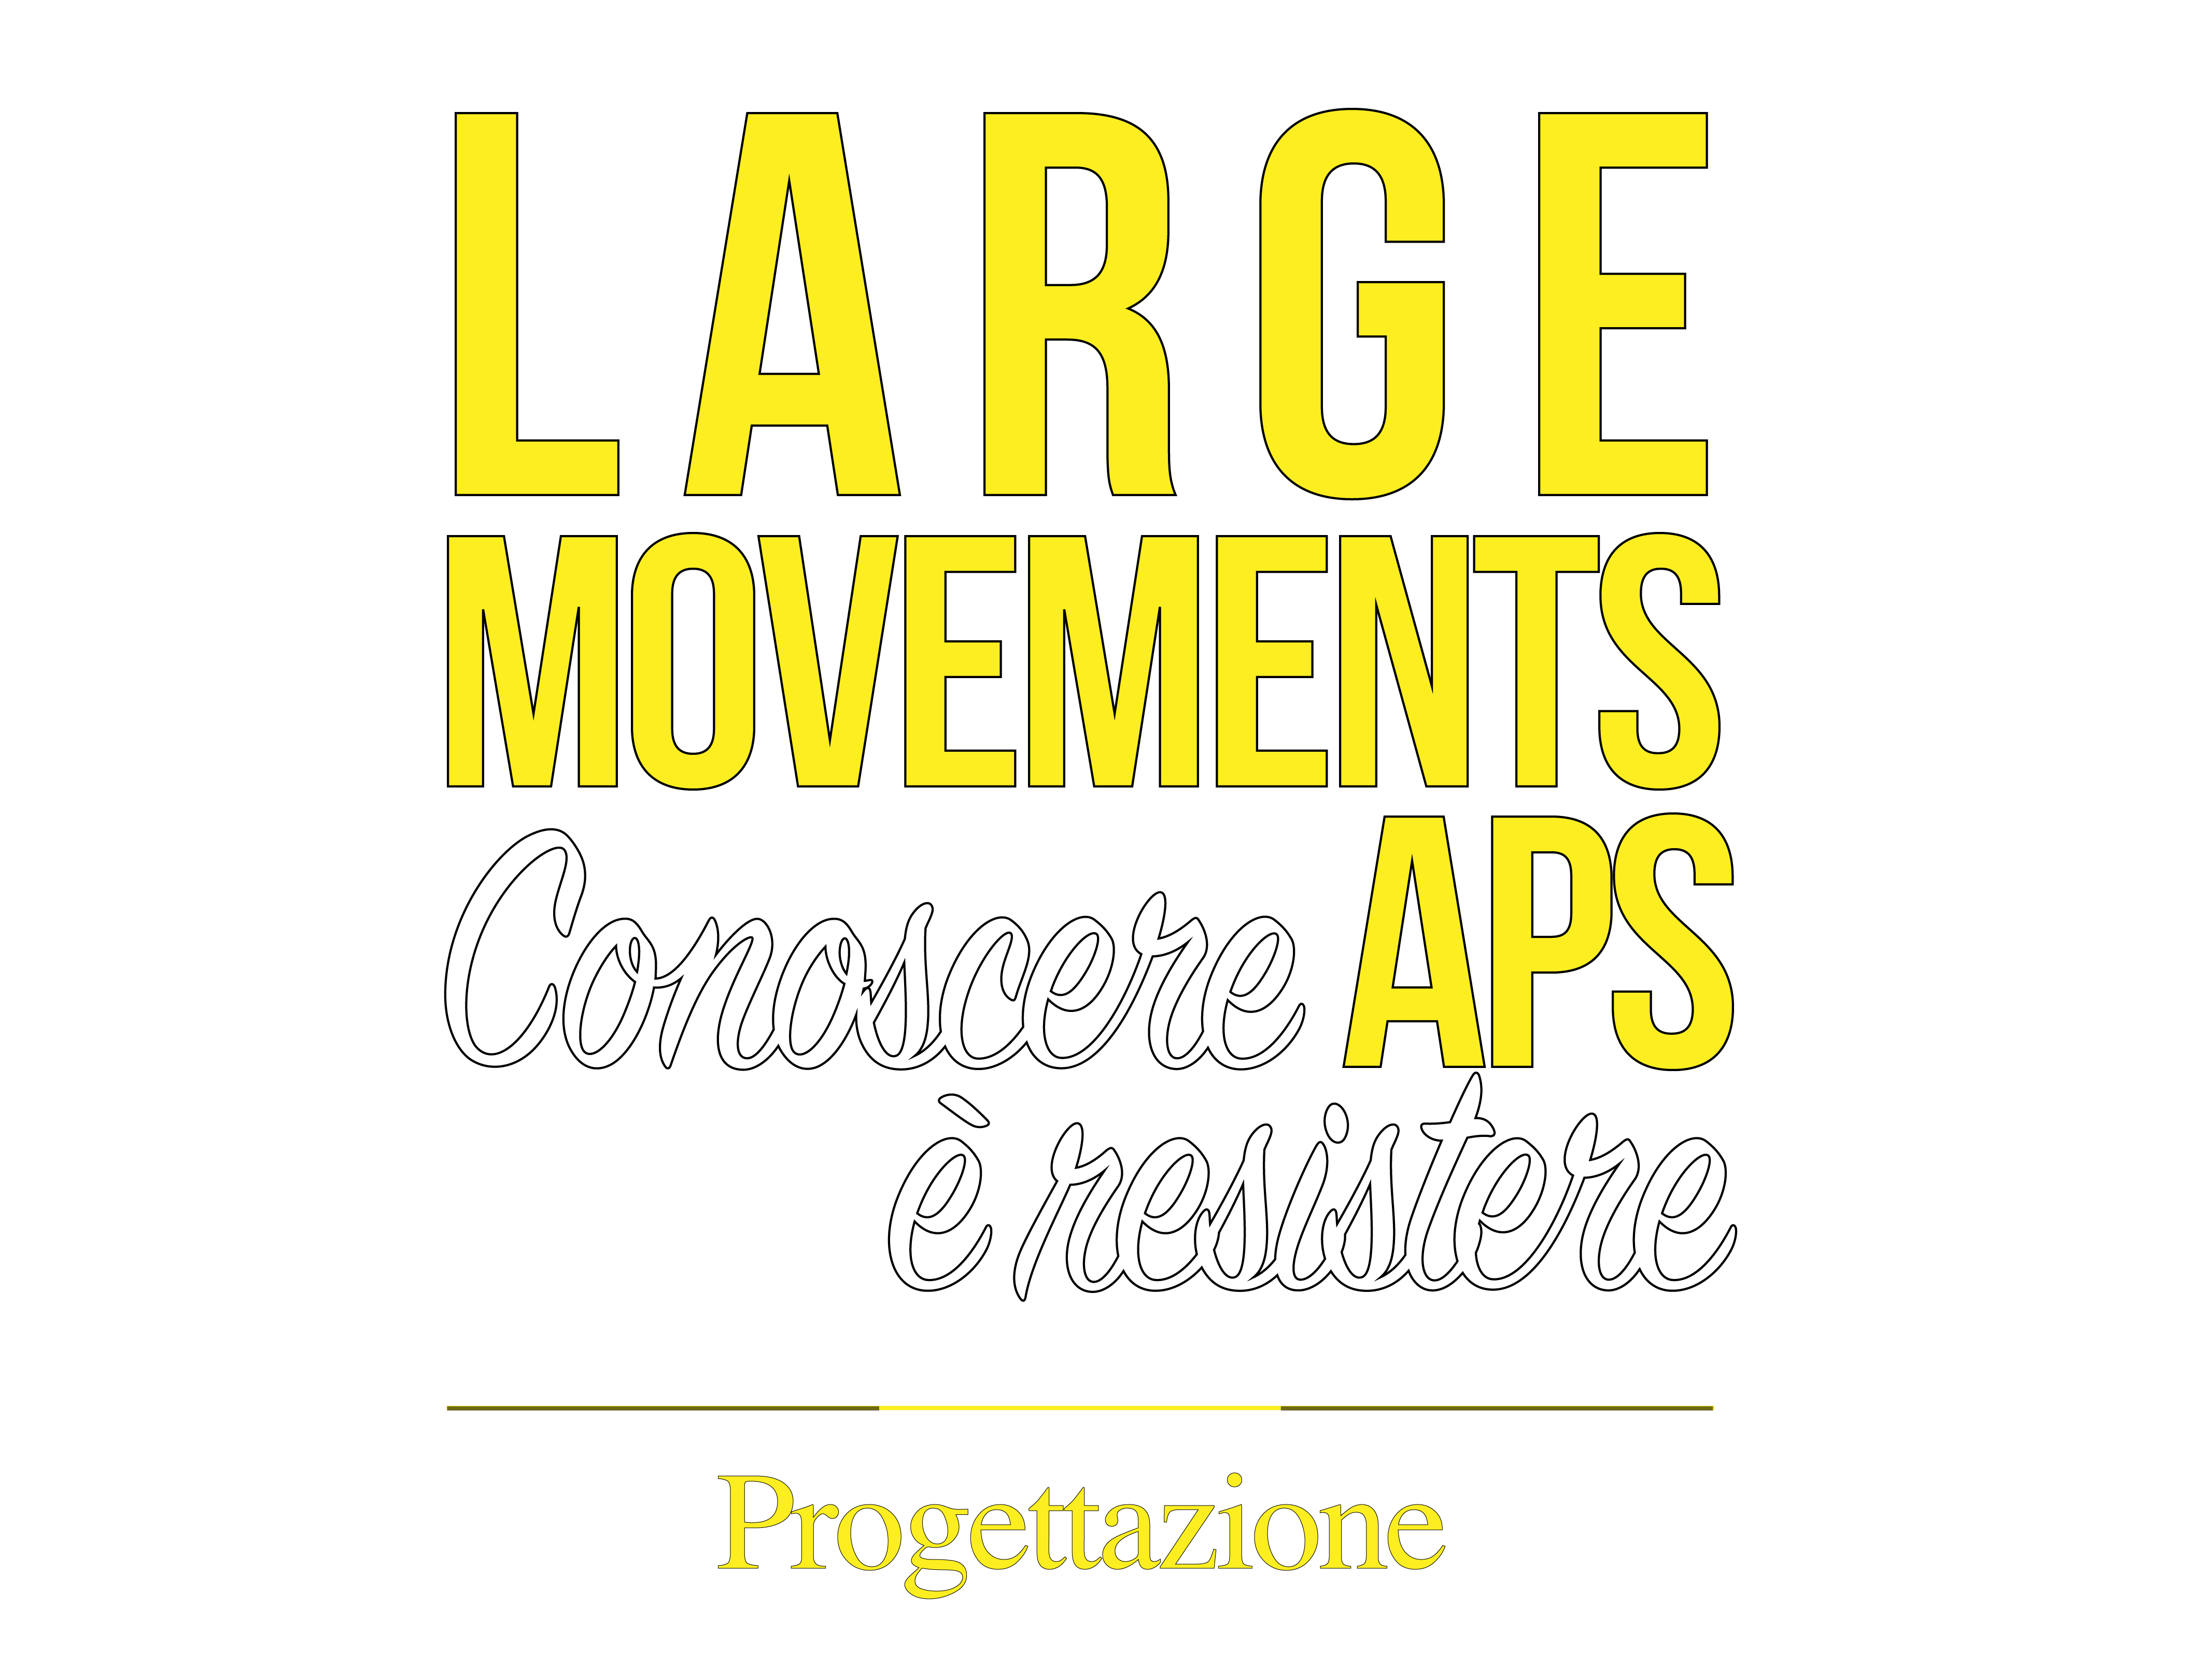 Large-Movements-APS